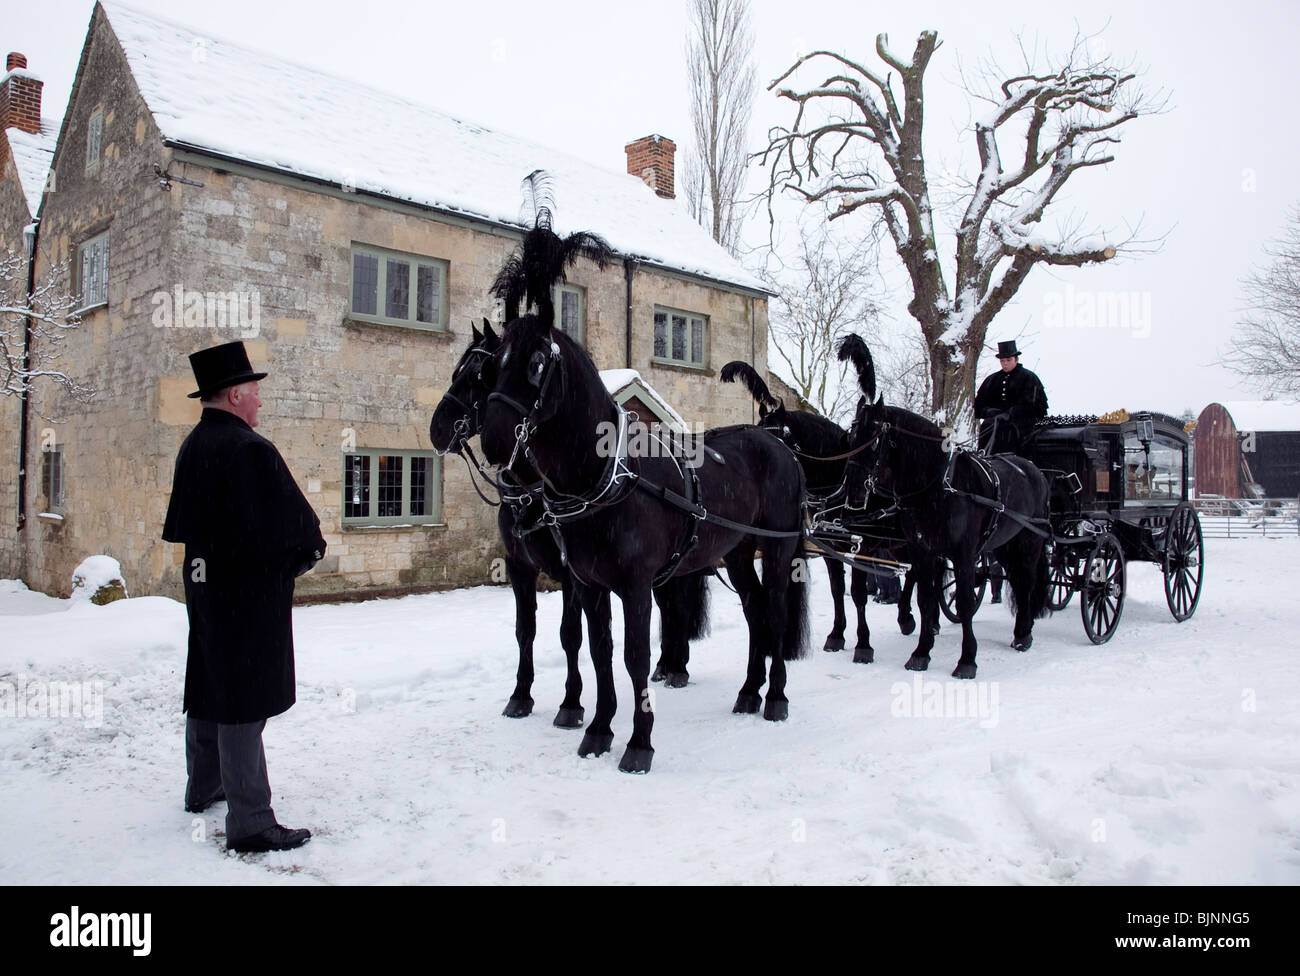 Vieux jeu traditionnel cheval transport funéraire en neige avec quatre chevaux prêts à partir pour l'église Banque D'Images